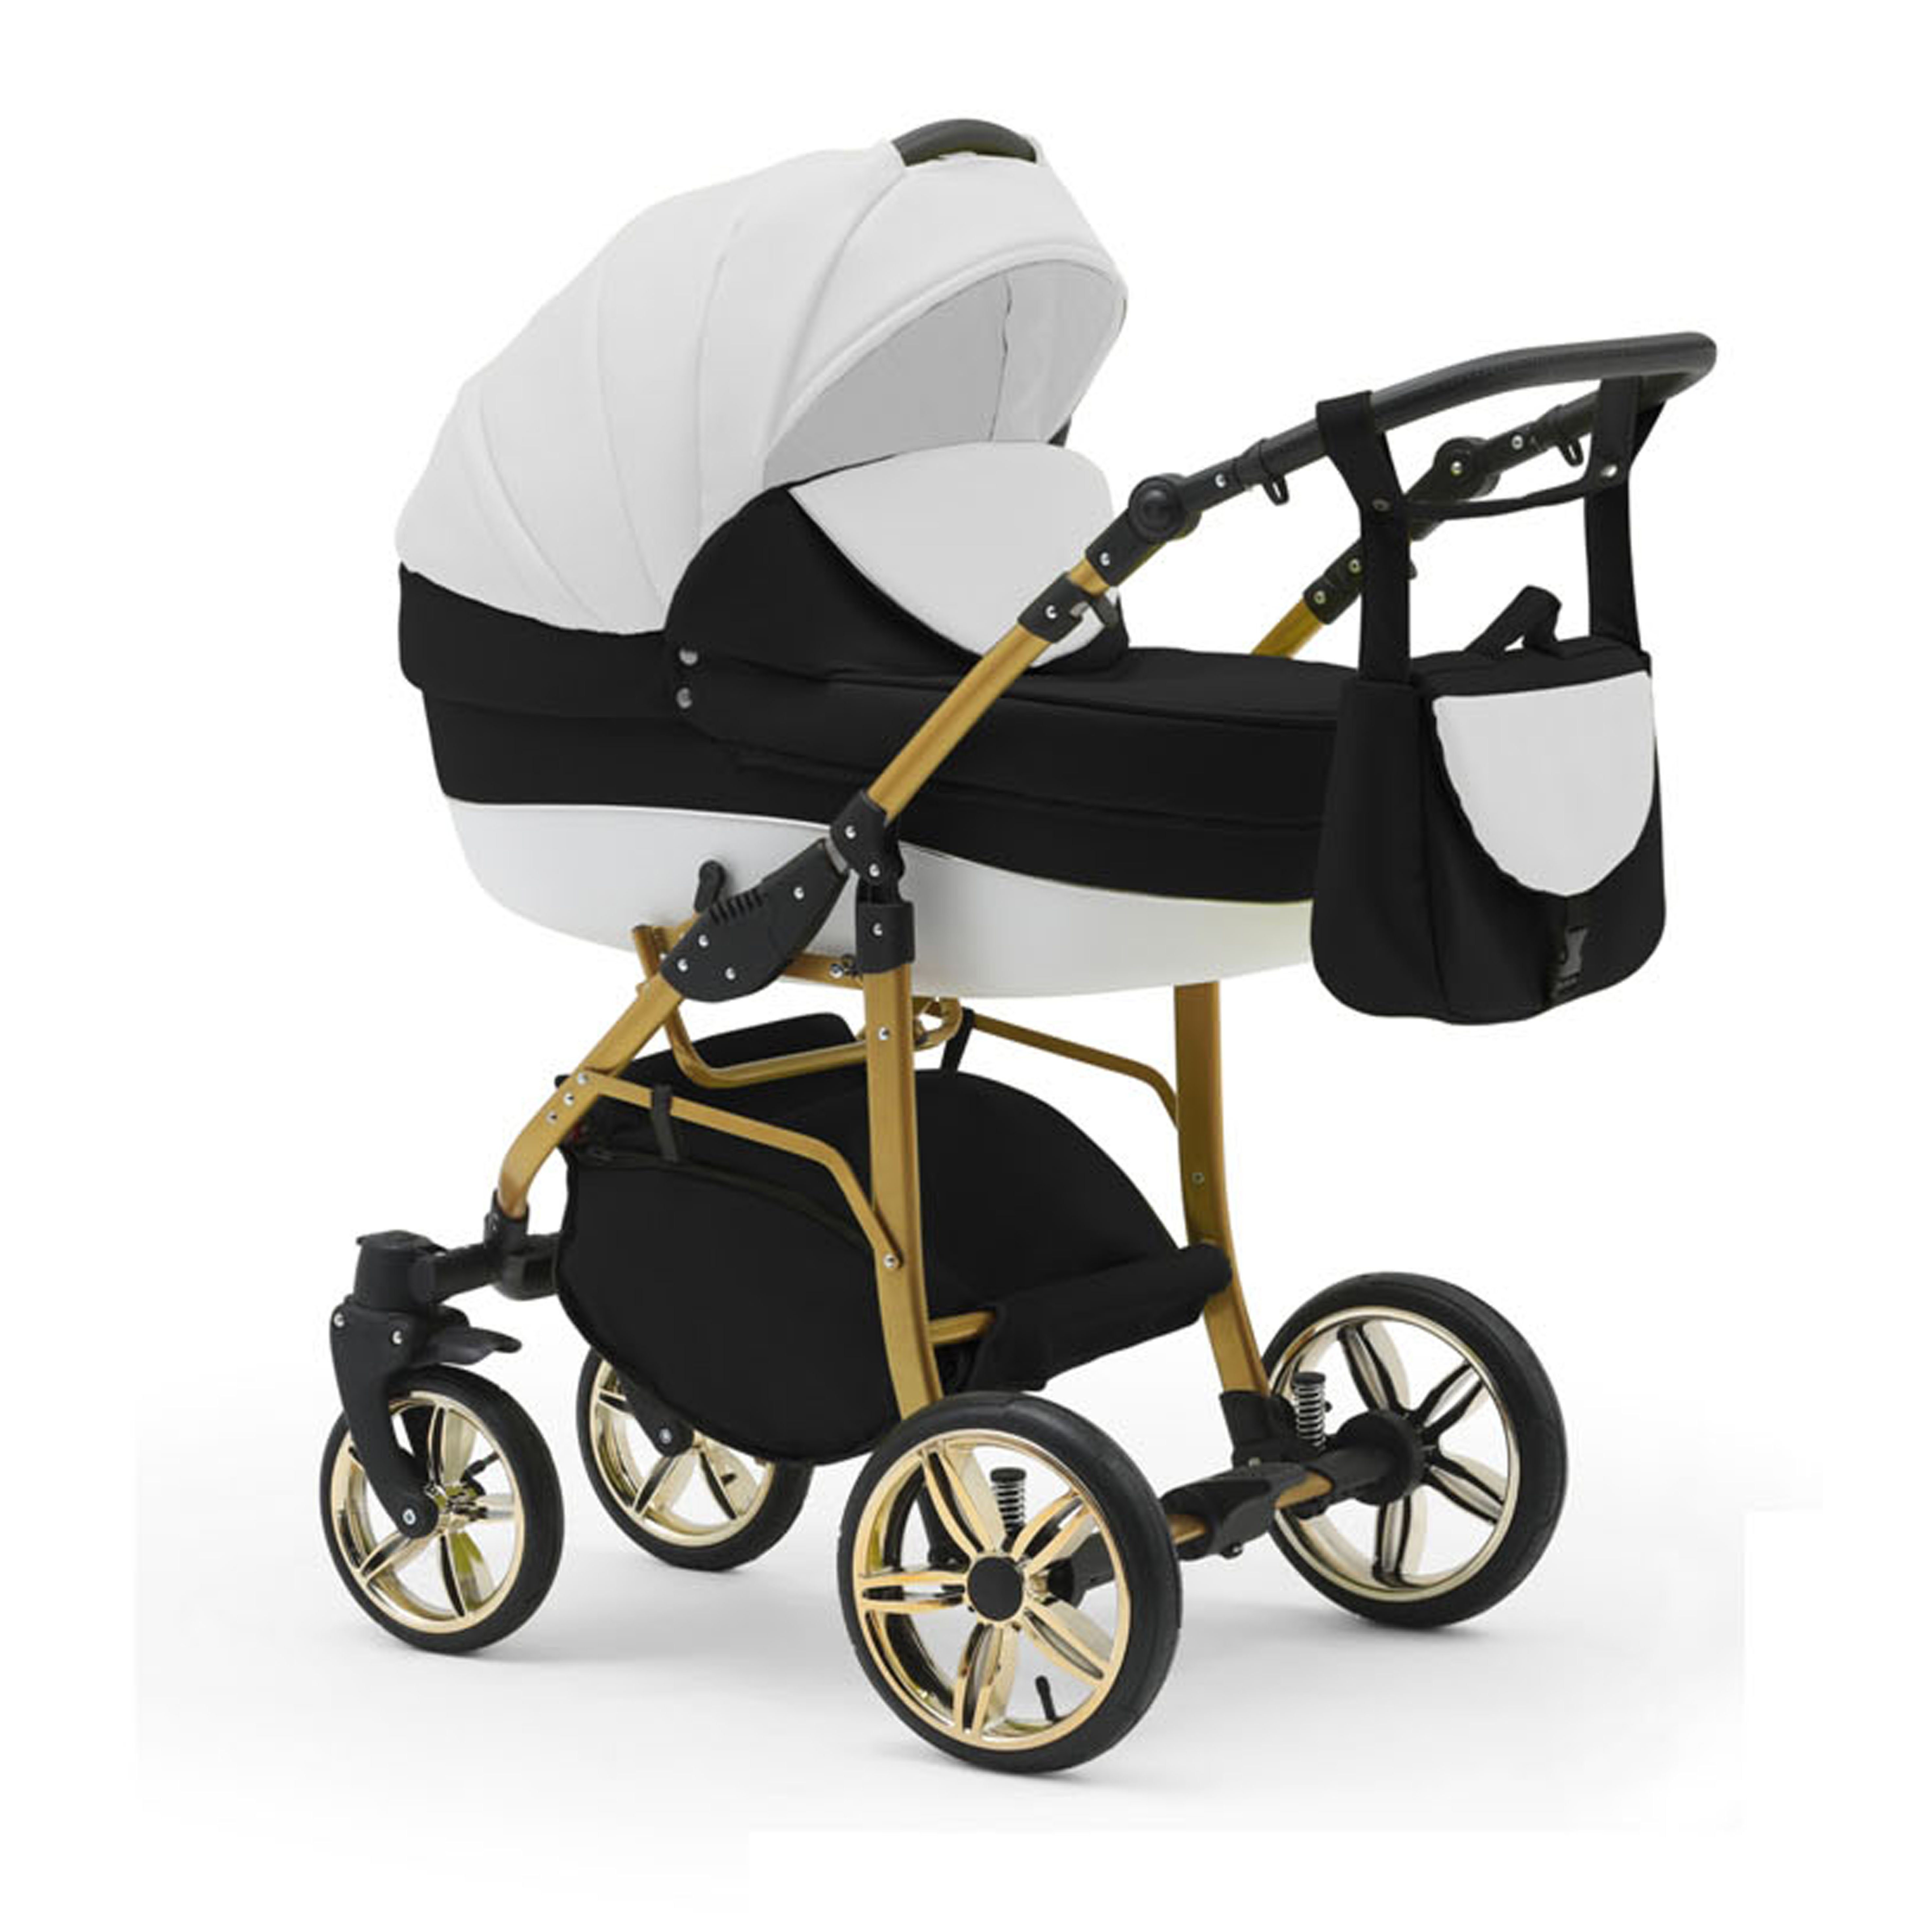 in Weiß-Schwarz-Weiß 1 Cosmo babies-on-wheels 13 Kombi-Kinderwagen Teile Gold - 2 Farben 46 - ECO Kinderwagen-Set in